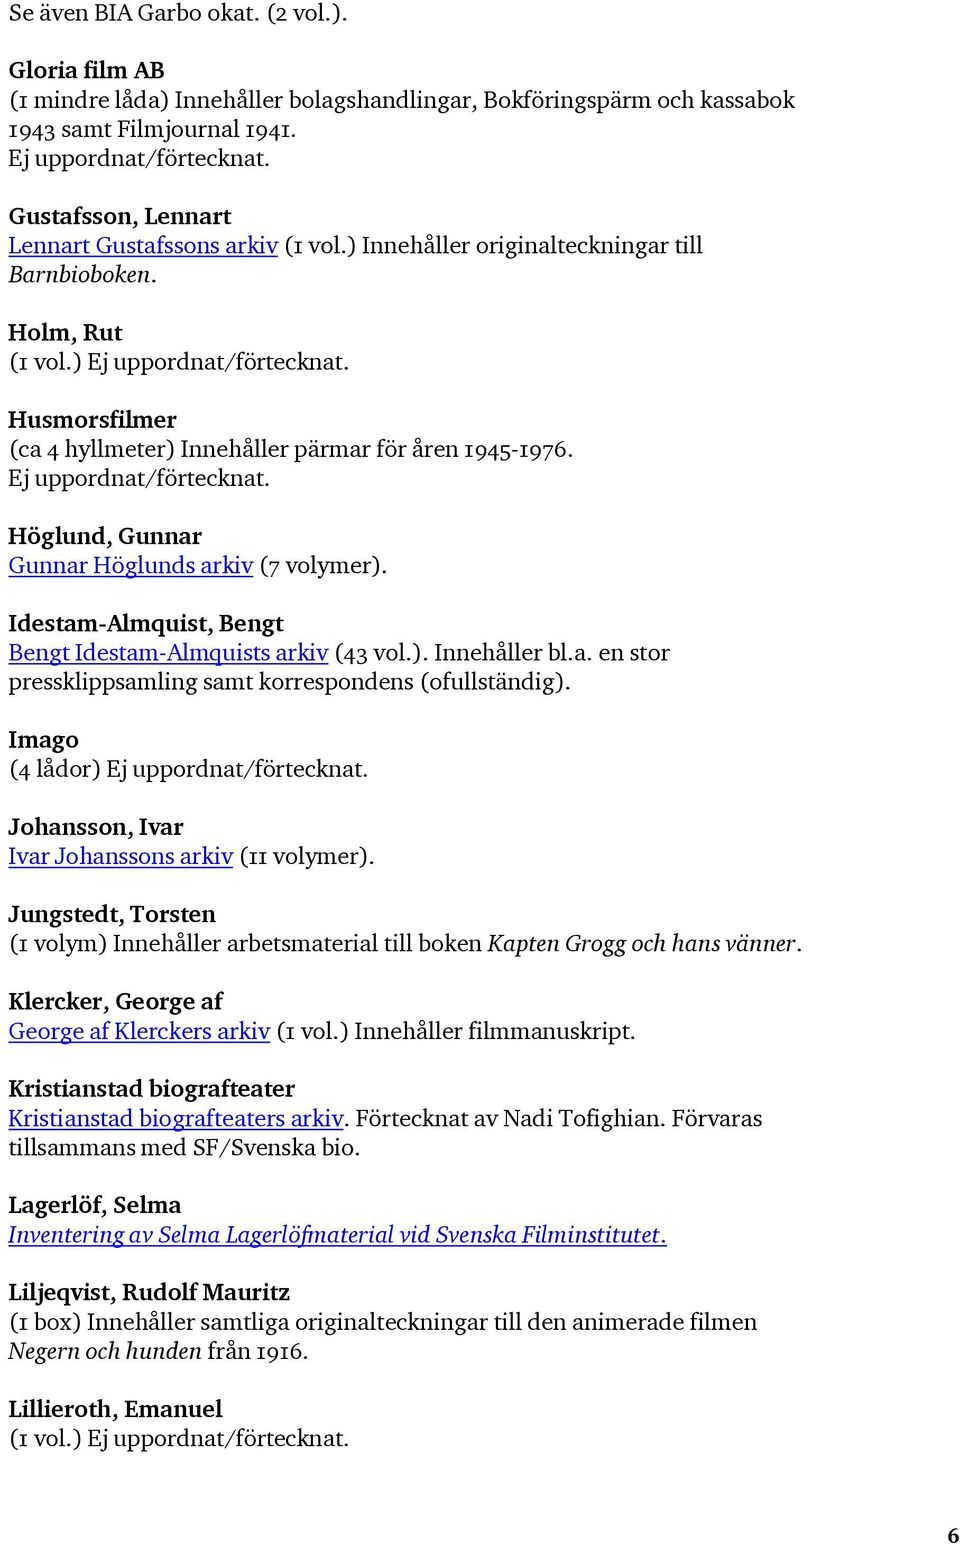 Höglund, Gunnar Gunnar Höglunds arkiv (7 volymer). Idestam-Almquist, Bengt Bengt Idestam-Almquists arkiv (43 vol.). Innehåller bl.a. en stor pressklippsamling samt korrespondens (ofullständig).